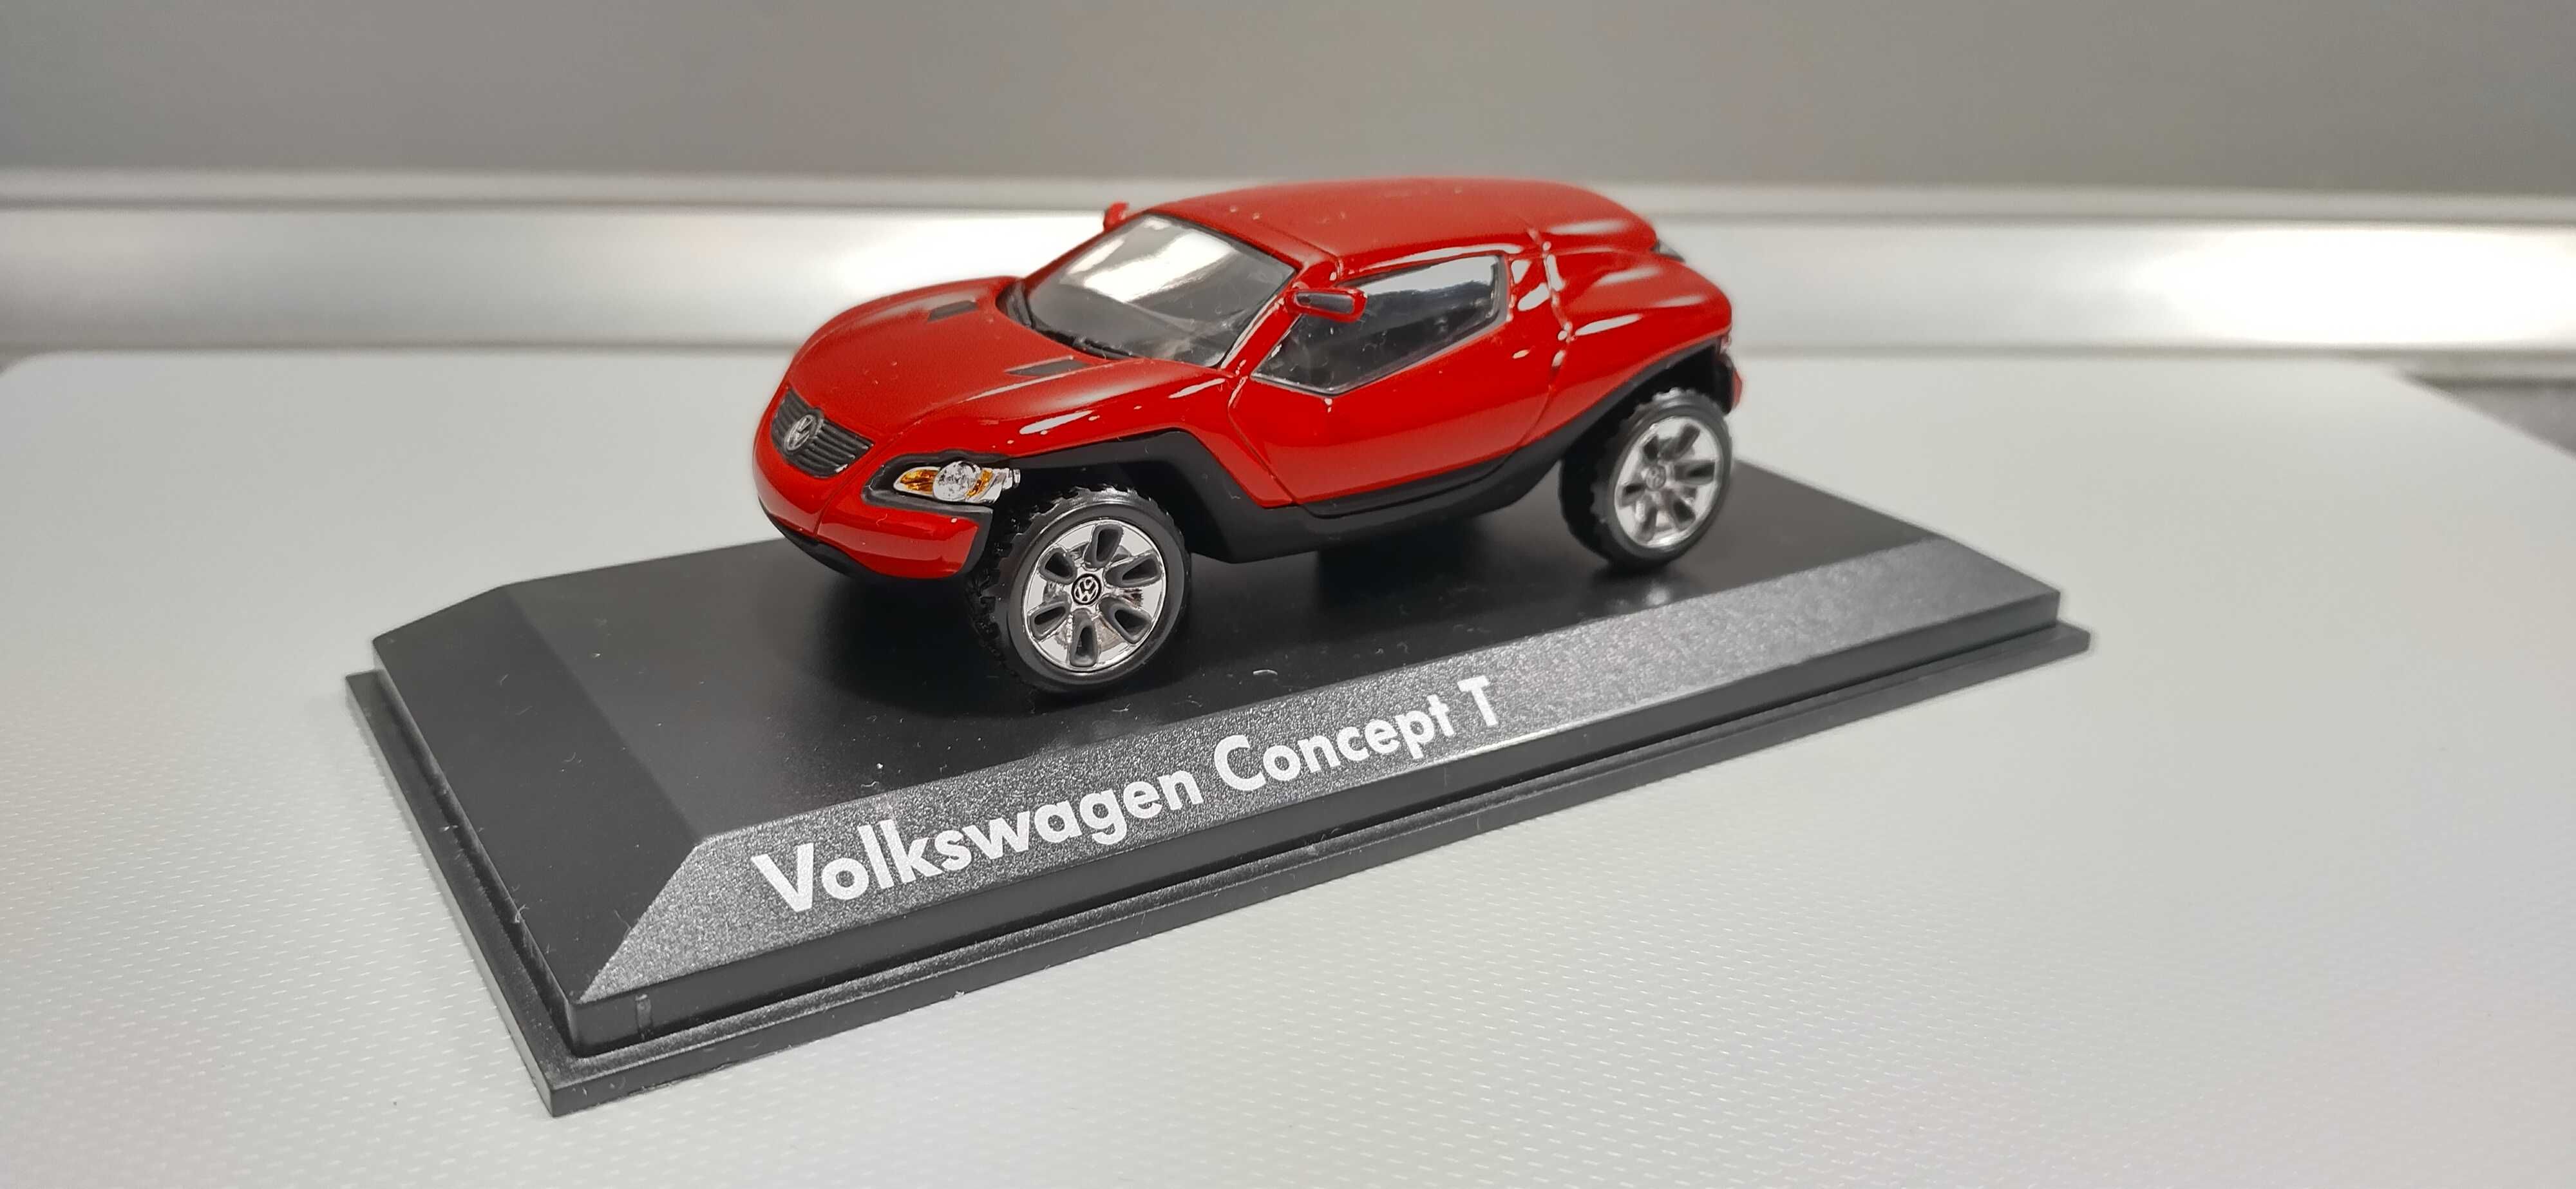 Volkswagen VW Concept T 1:43 Norev